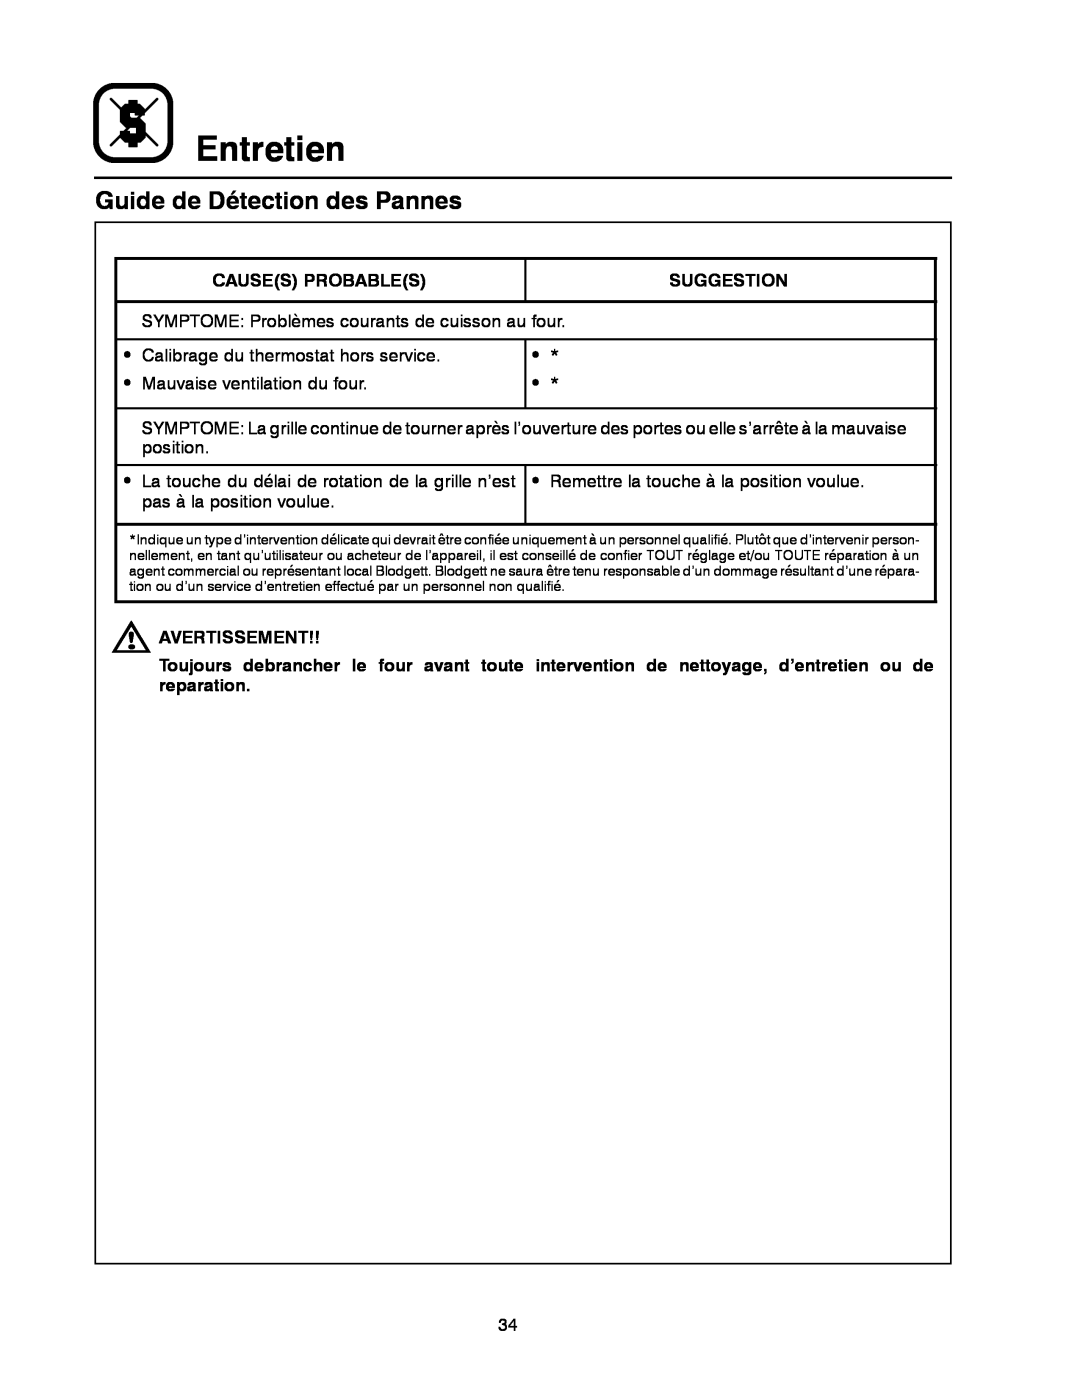 Blodgett XR8-G manual Guide de Détection des Pannes, Entretien, Causes Probables, Suggestion, Avertissement 